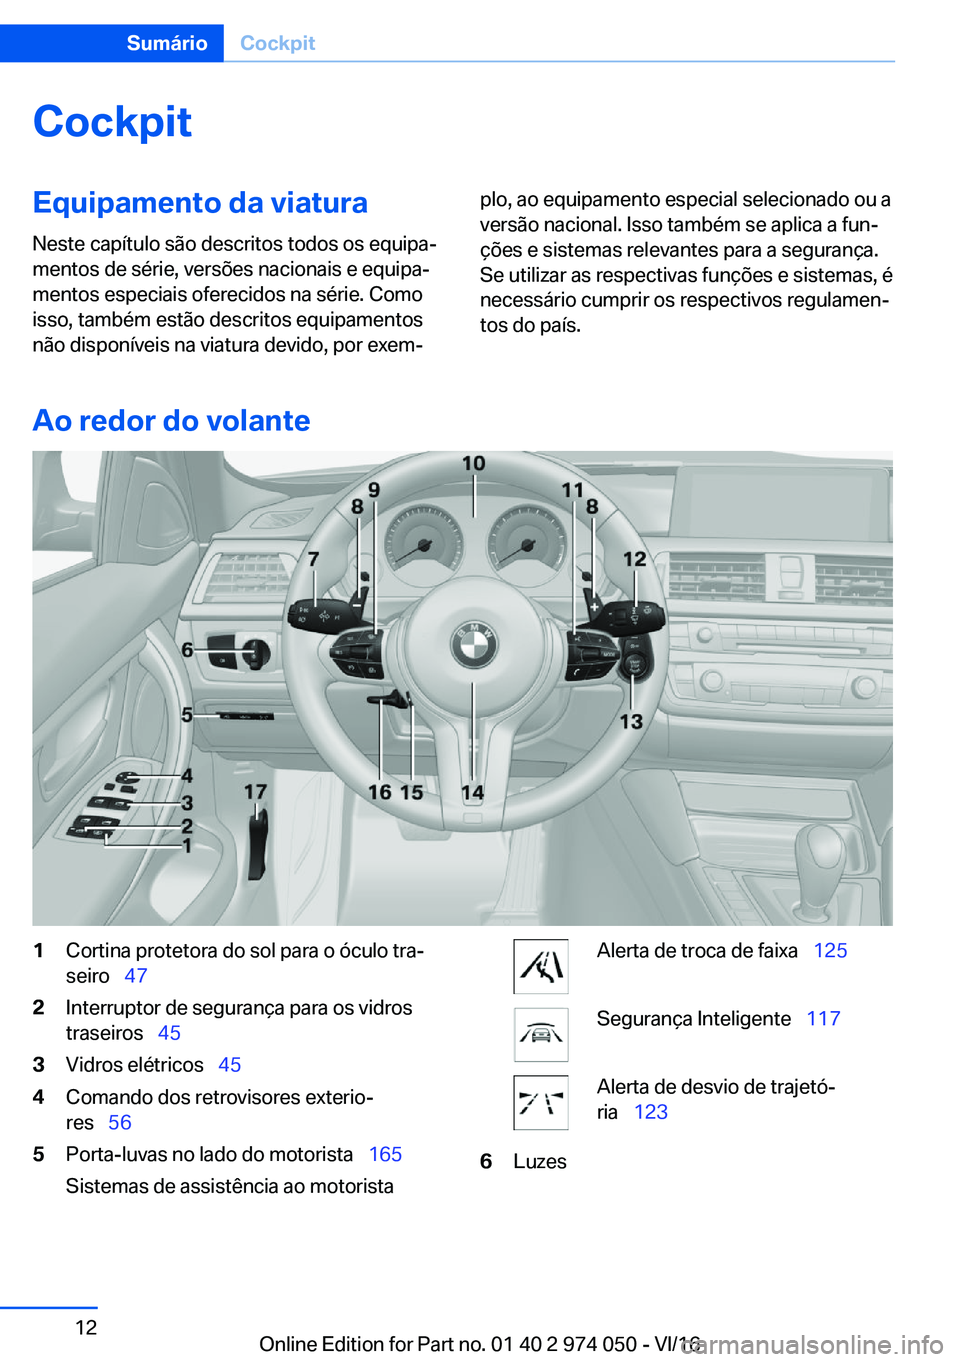 BMW M3 2017  Manual do condutor (in Portuguese) �C�o�c�k�p�i�t�E�q�u�i�p�a�m�e�n�t�o��d�a��v�i�a�t�u�r�a
�N�e�s�t�e� �c�a�p�